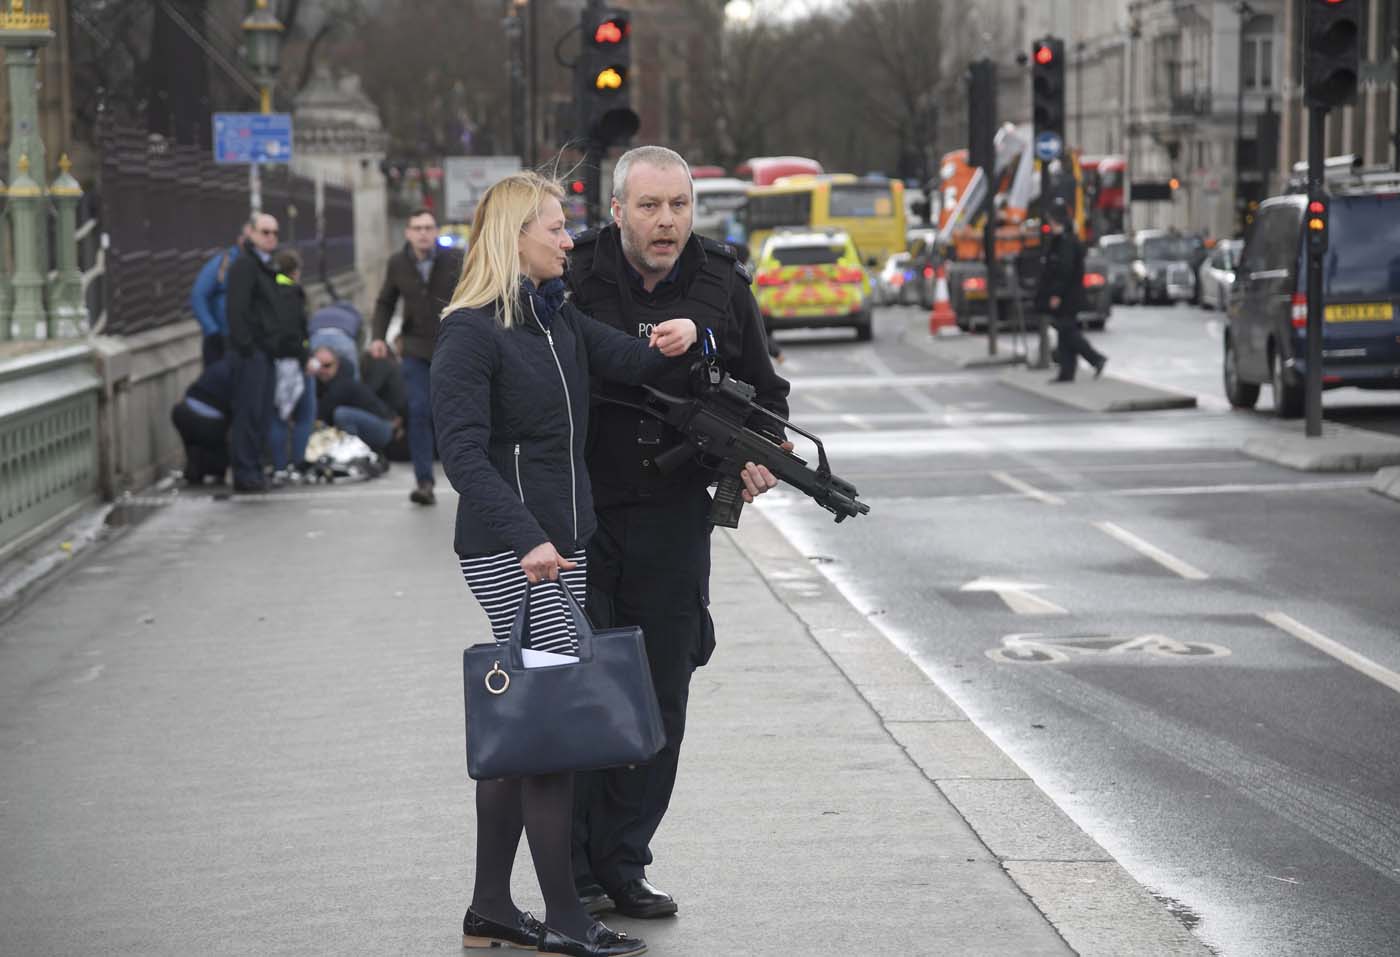 El ataque frente el Parlamento británico es terrorismo, dice la Policía